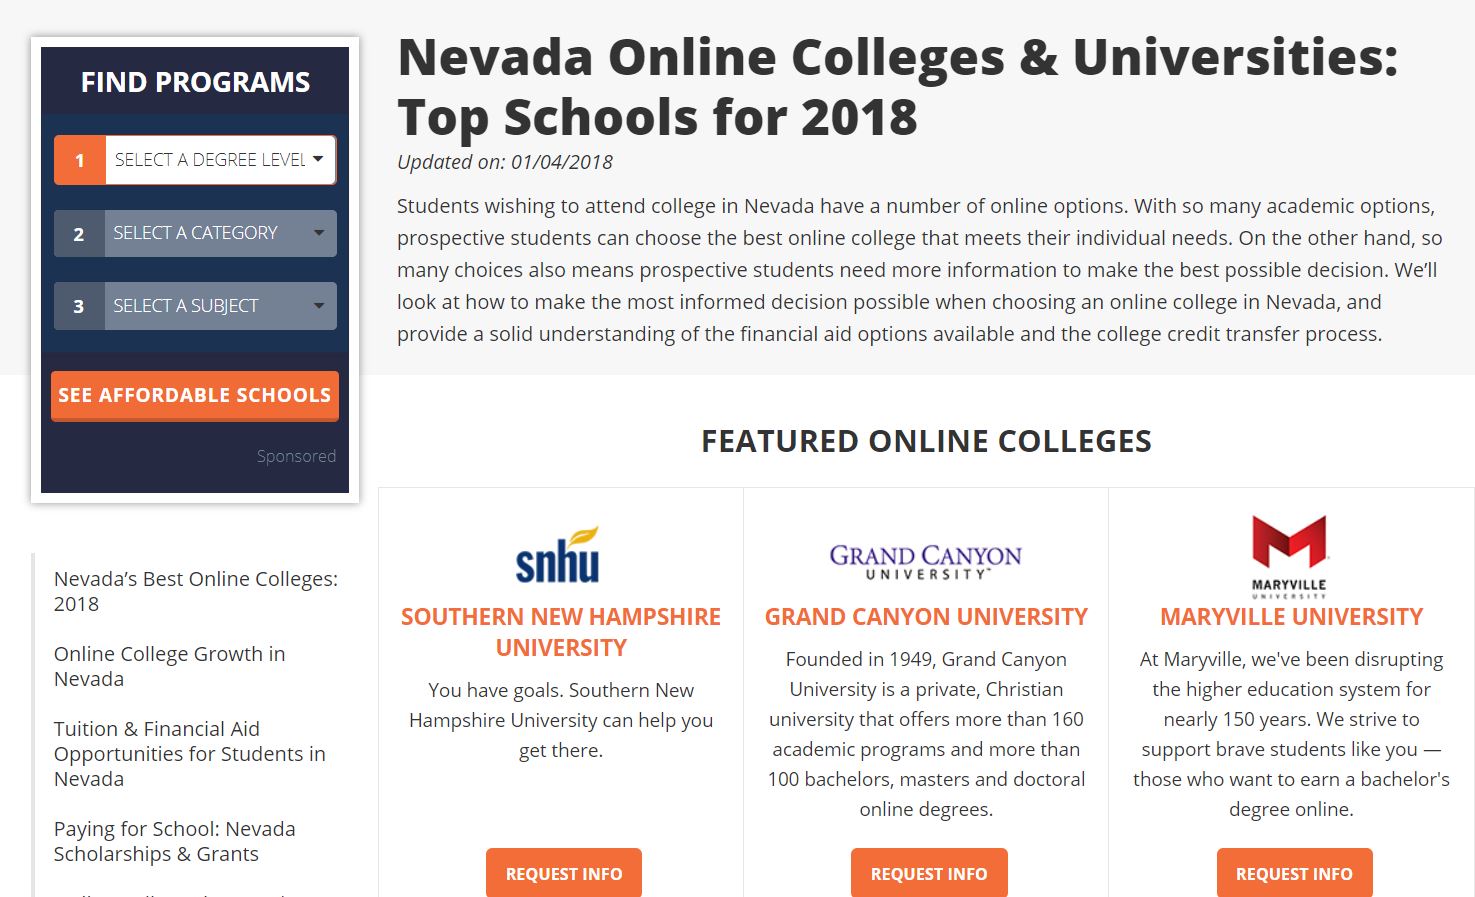 Nevada Online Colleges & Universities